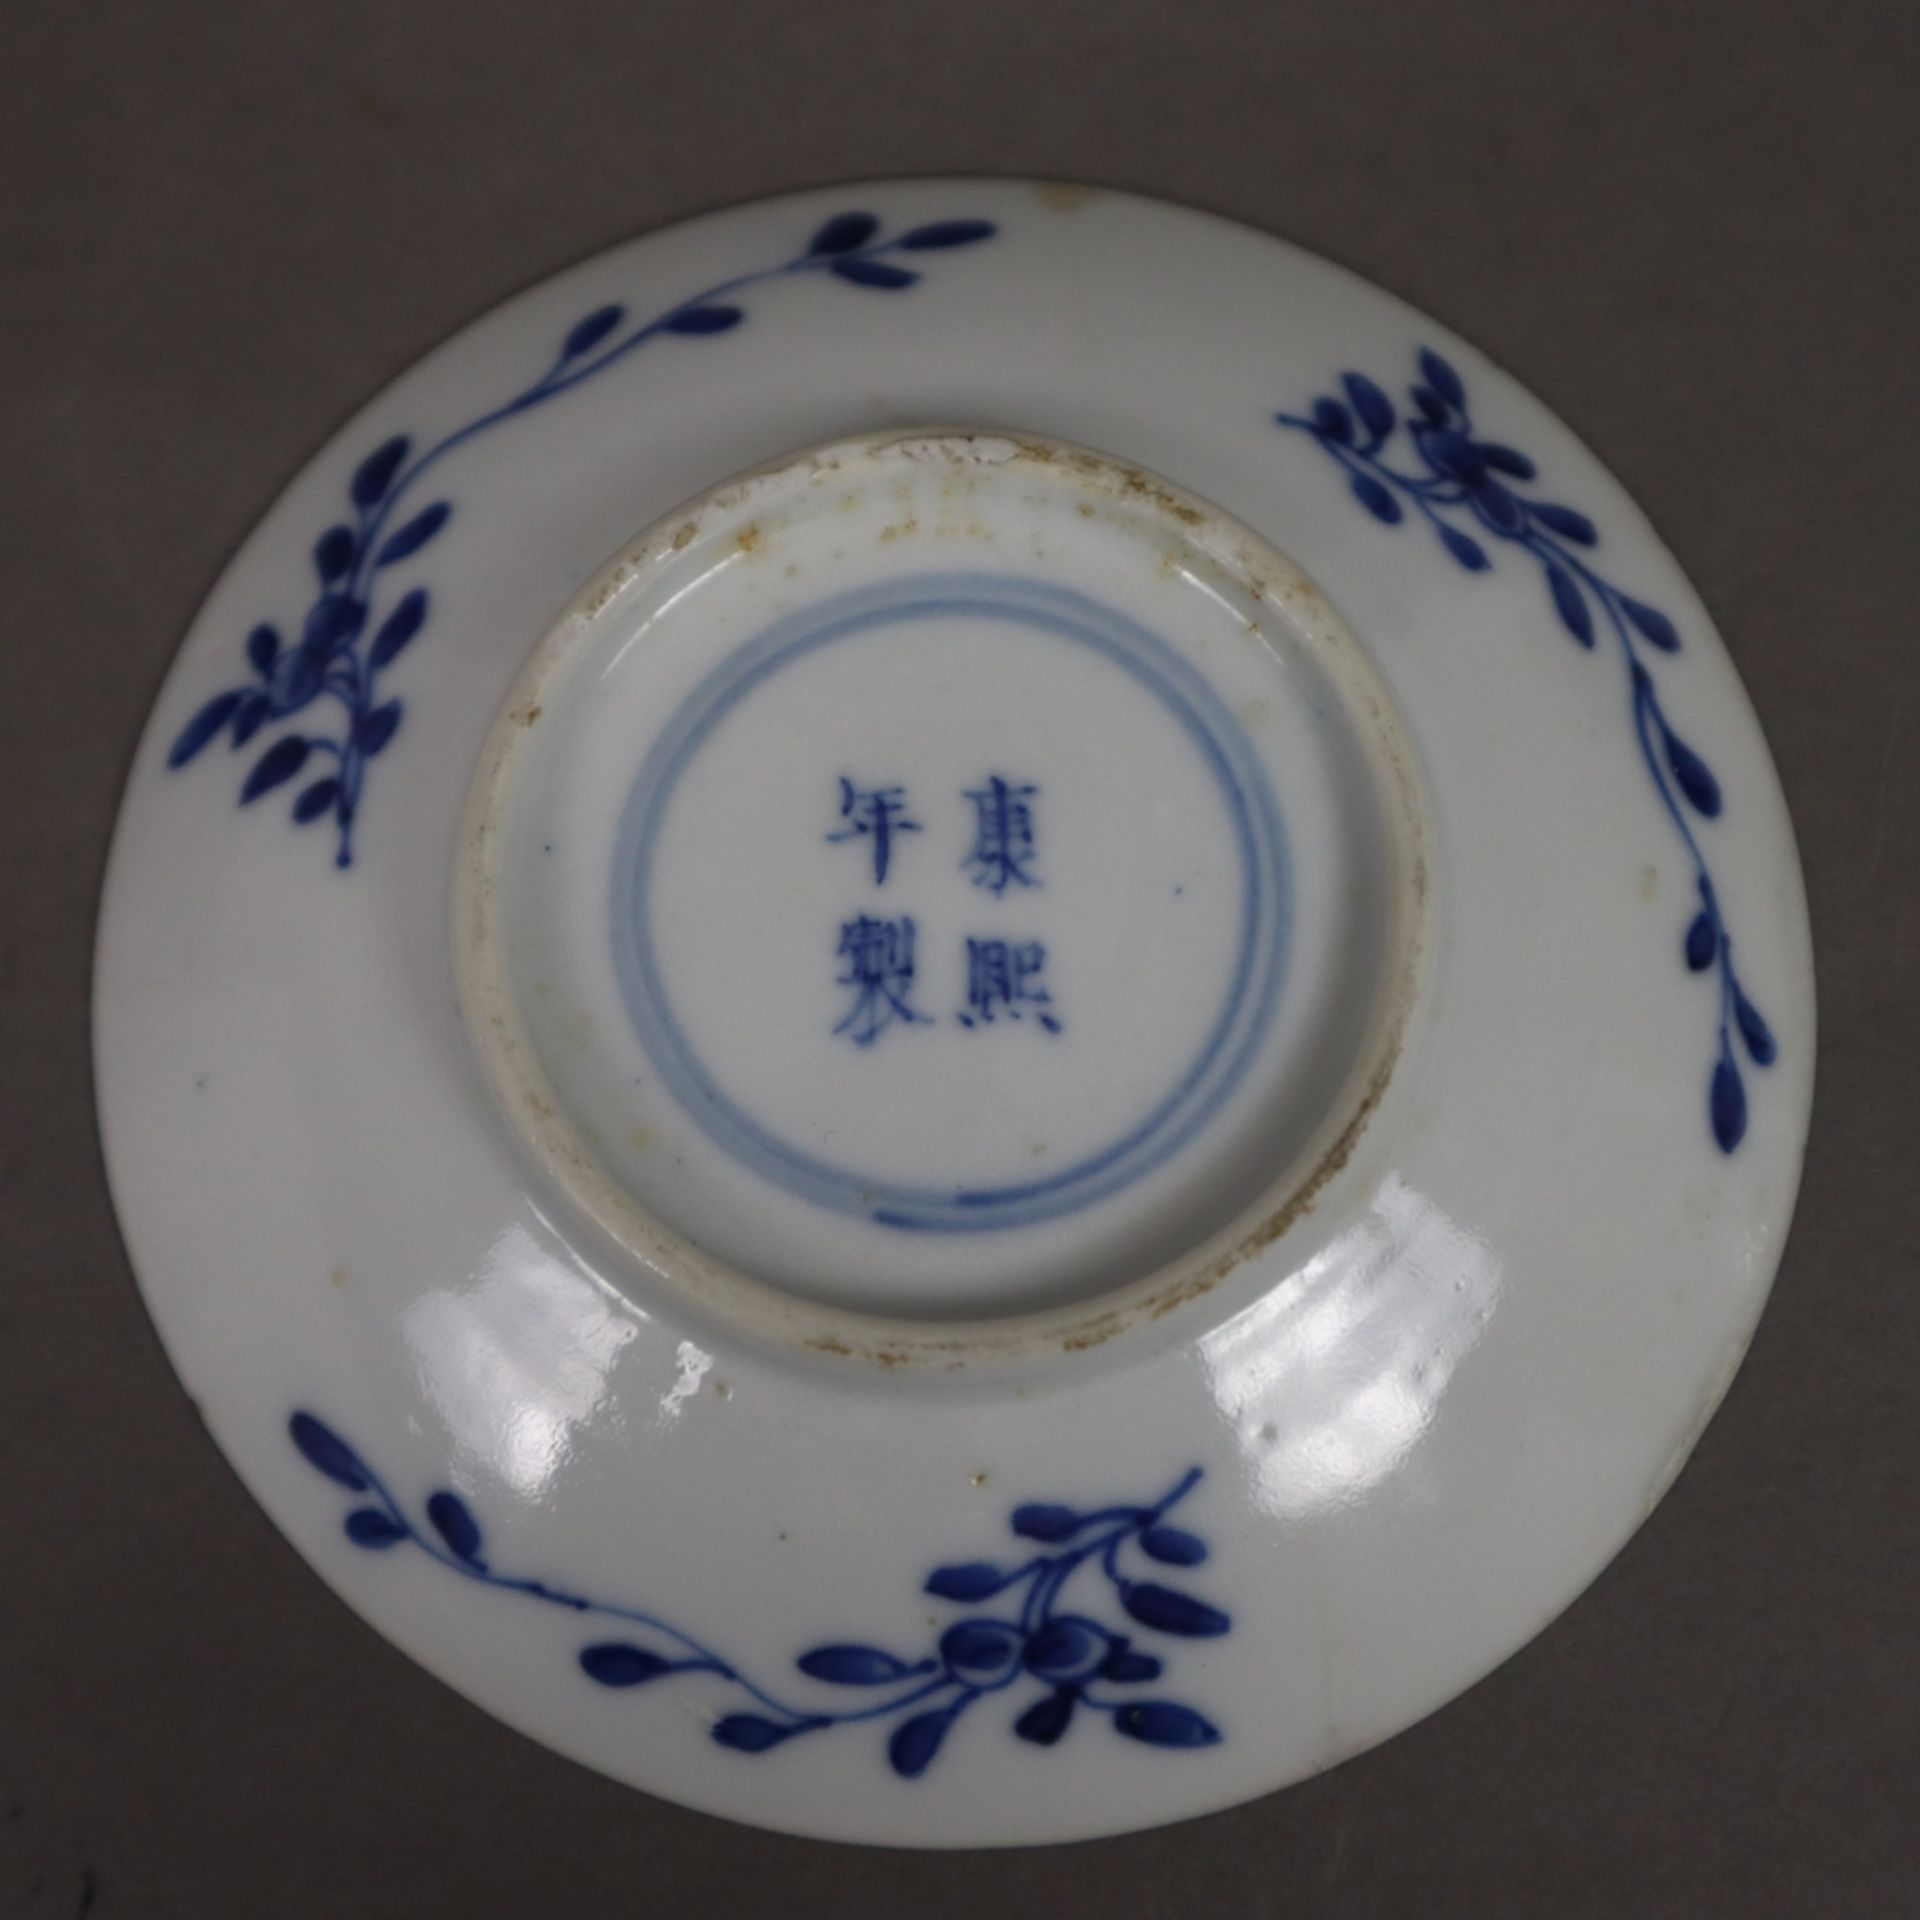 Drei Blauweiß-Tellerchen - China, Porzellan, als Dekor Landschaften mit berittenen Jägern auf Hasen - Bild 8 aus 9